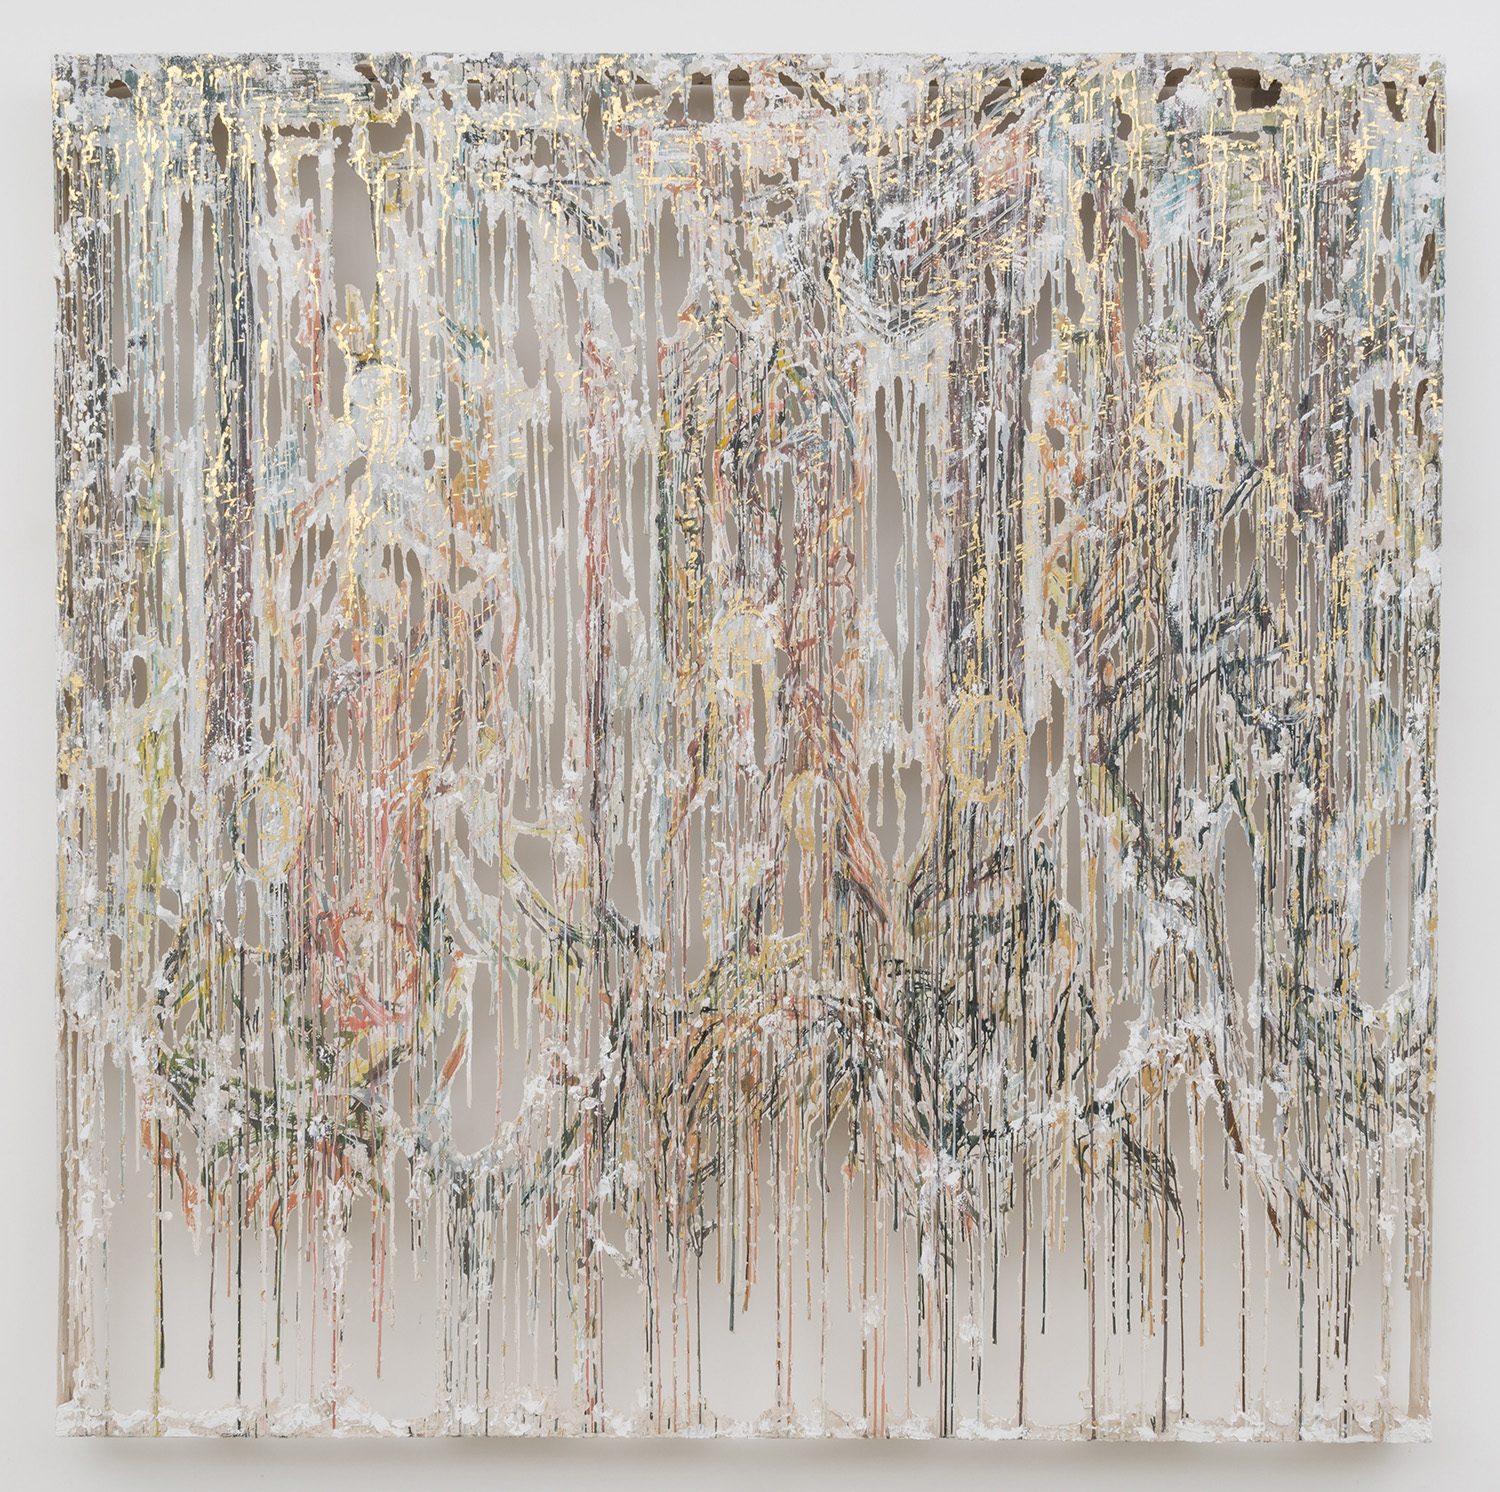 Diana Al-Hadid, Mirror Marriage, 2015, Moran Moran Gallery